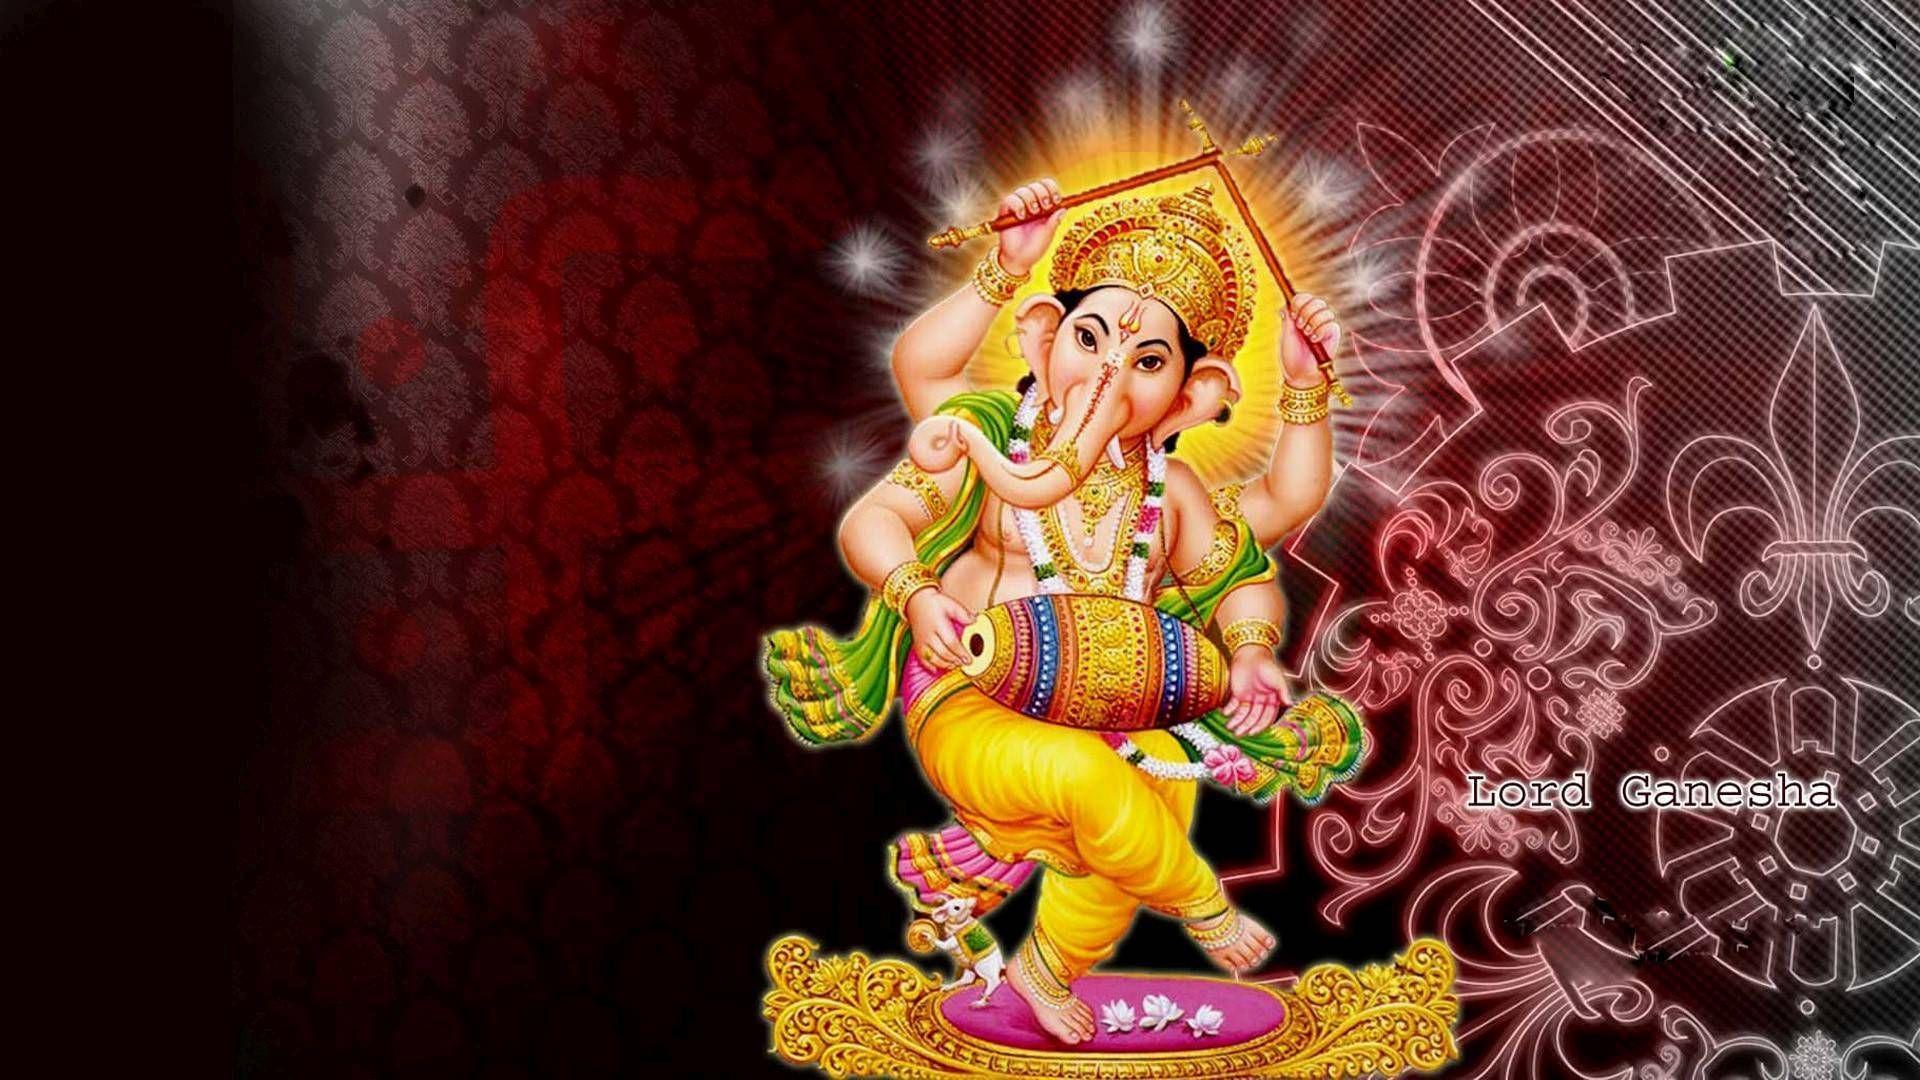 hindu god images for desktop